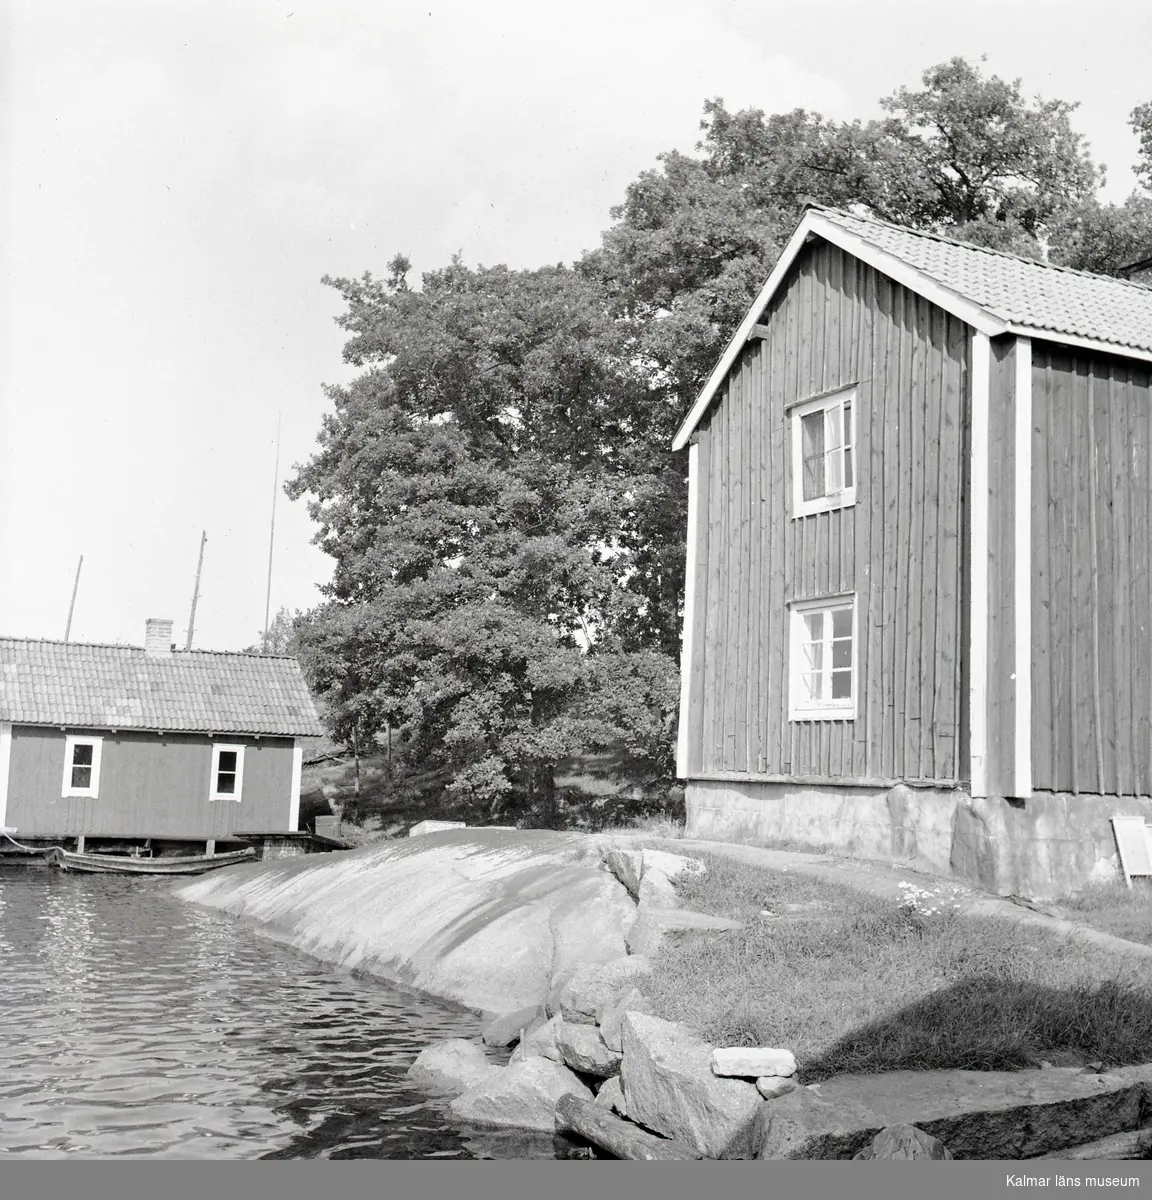 Hus och sjöbod i bakgrunden på Älö.